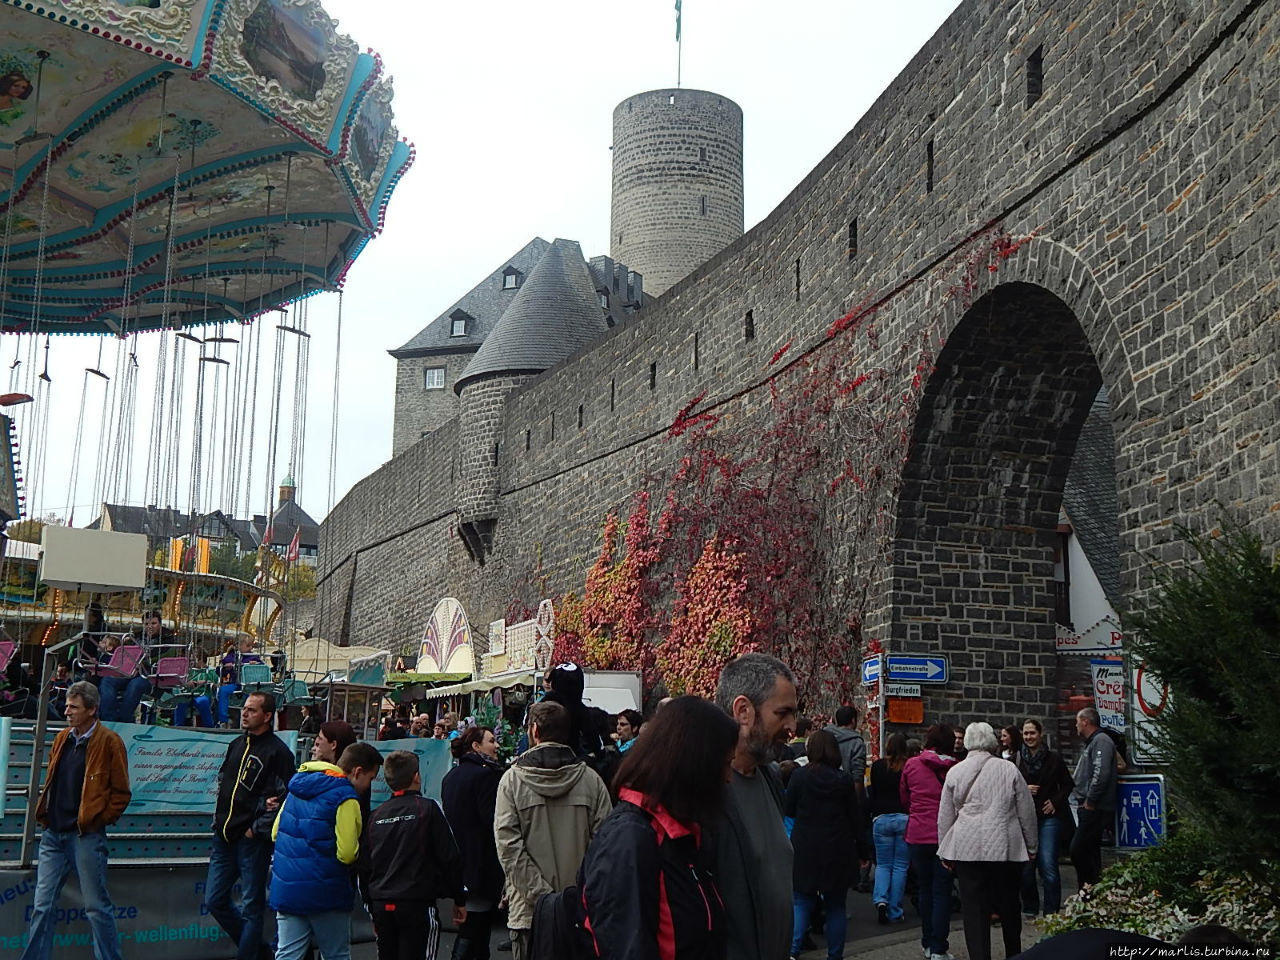 Осенняя ярмарка Лукасмаркт у крепостных стен Геновевабурга Майен, Германия